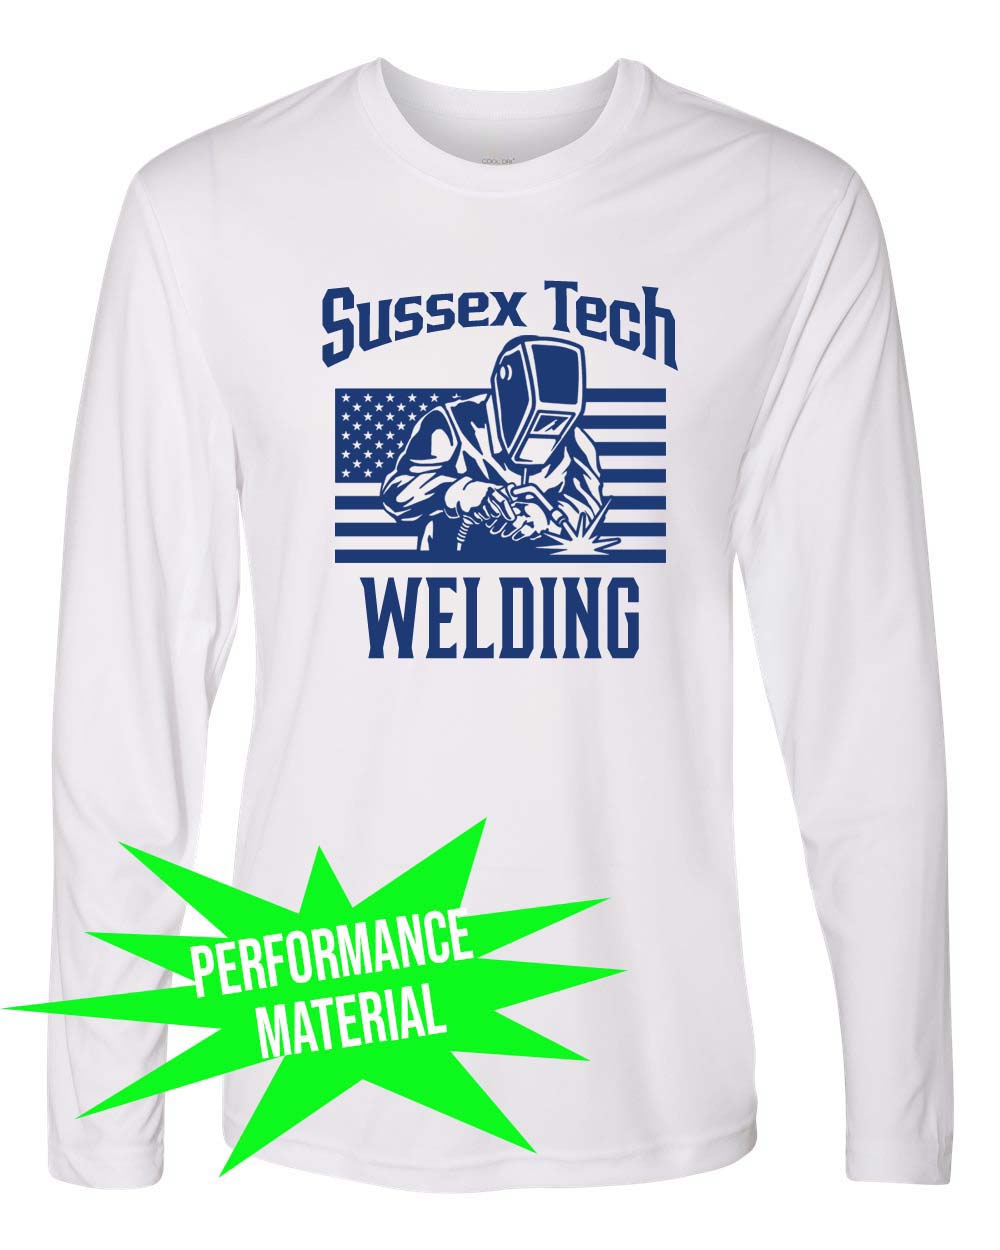 Sussex Tech Welding Performance Material Design 1 Long Sleeve Shirt